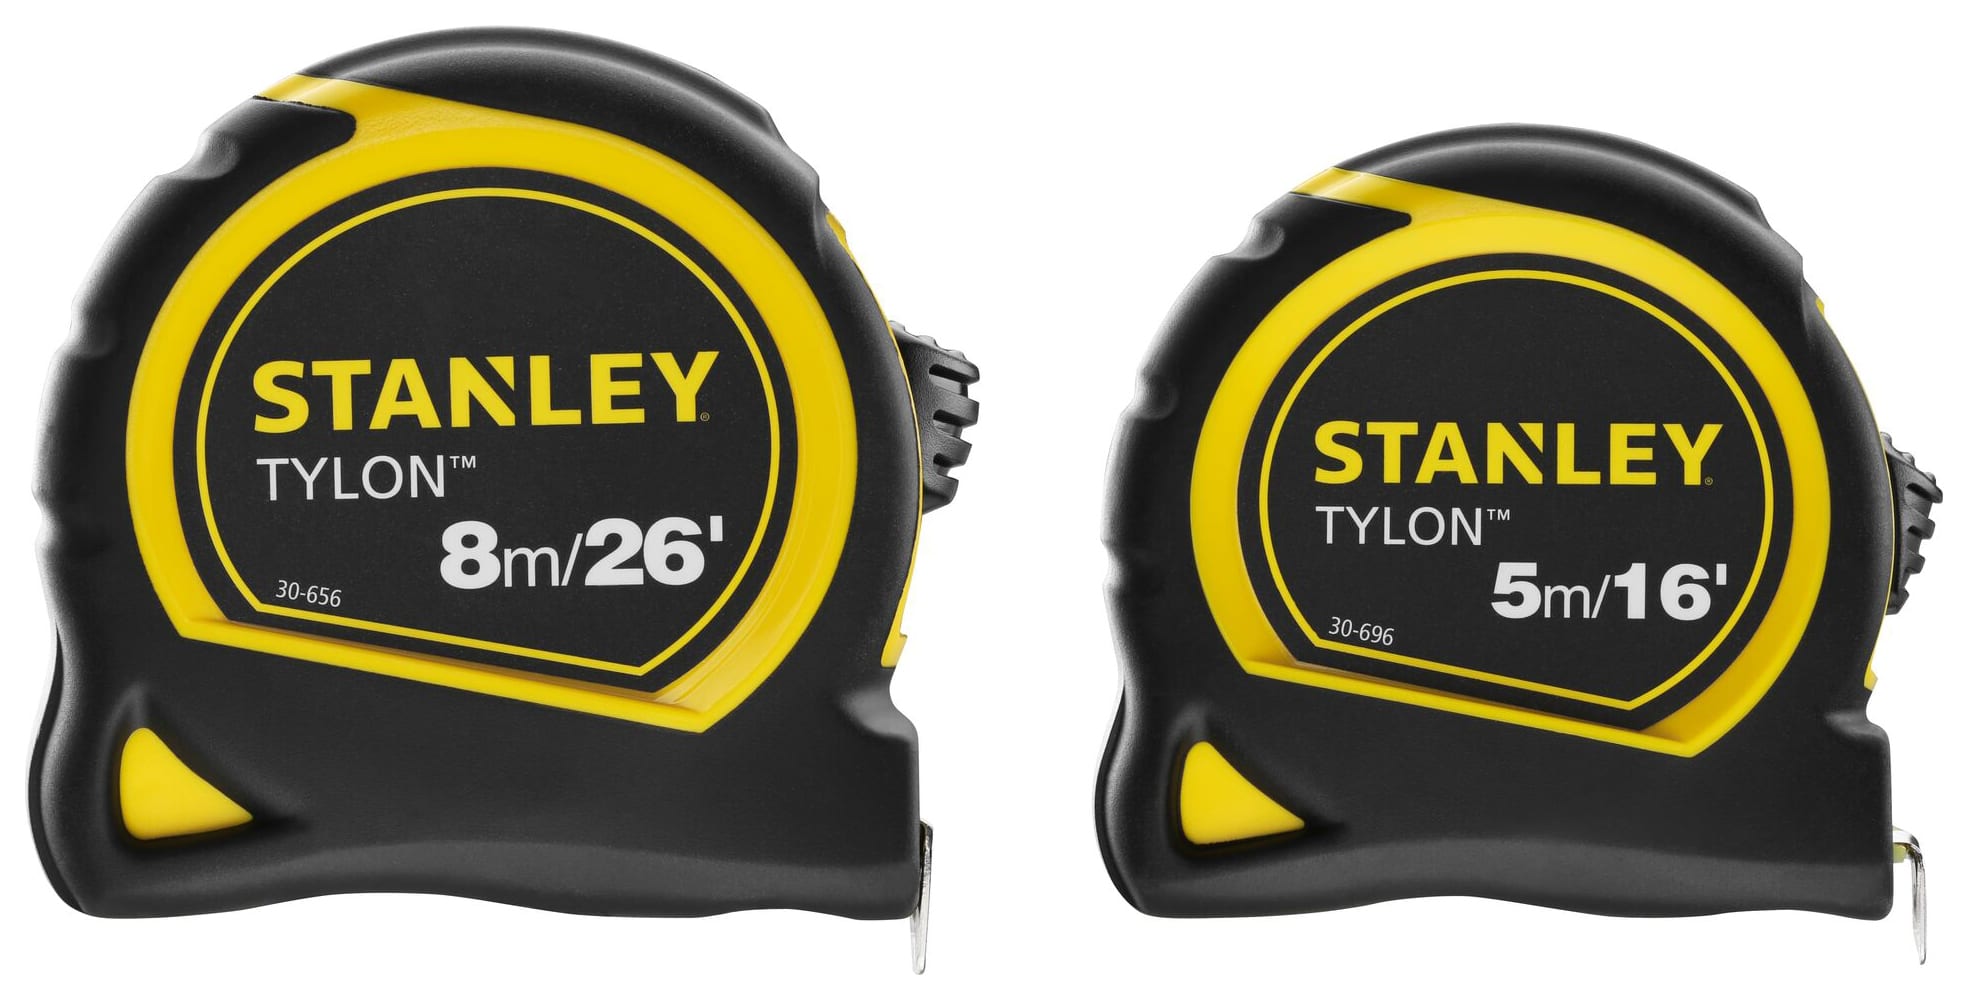 Stanley STHT9-98985 Tylon Tape Measure Twin Pack -